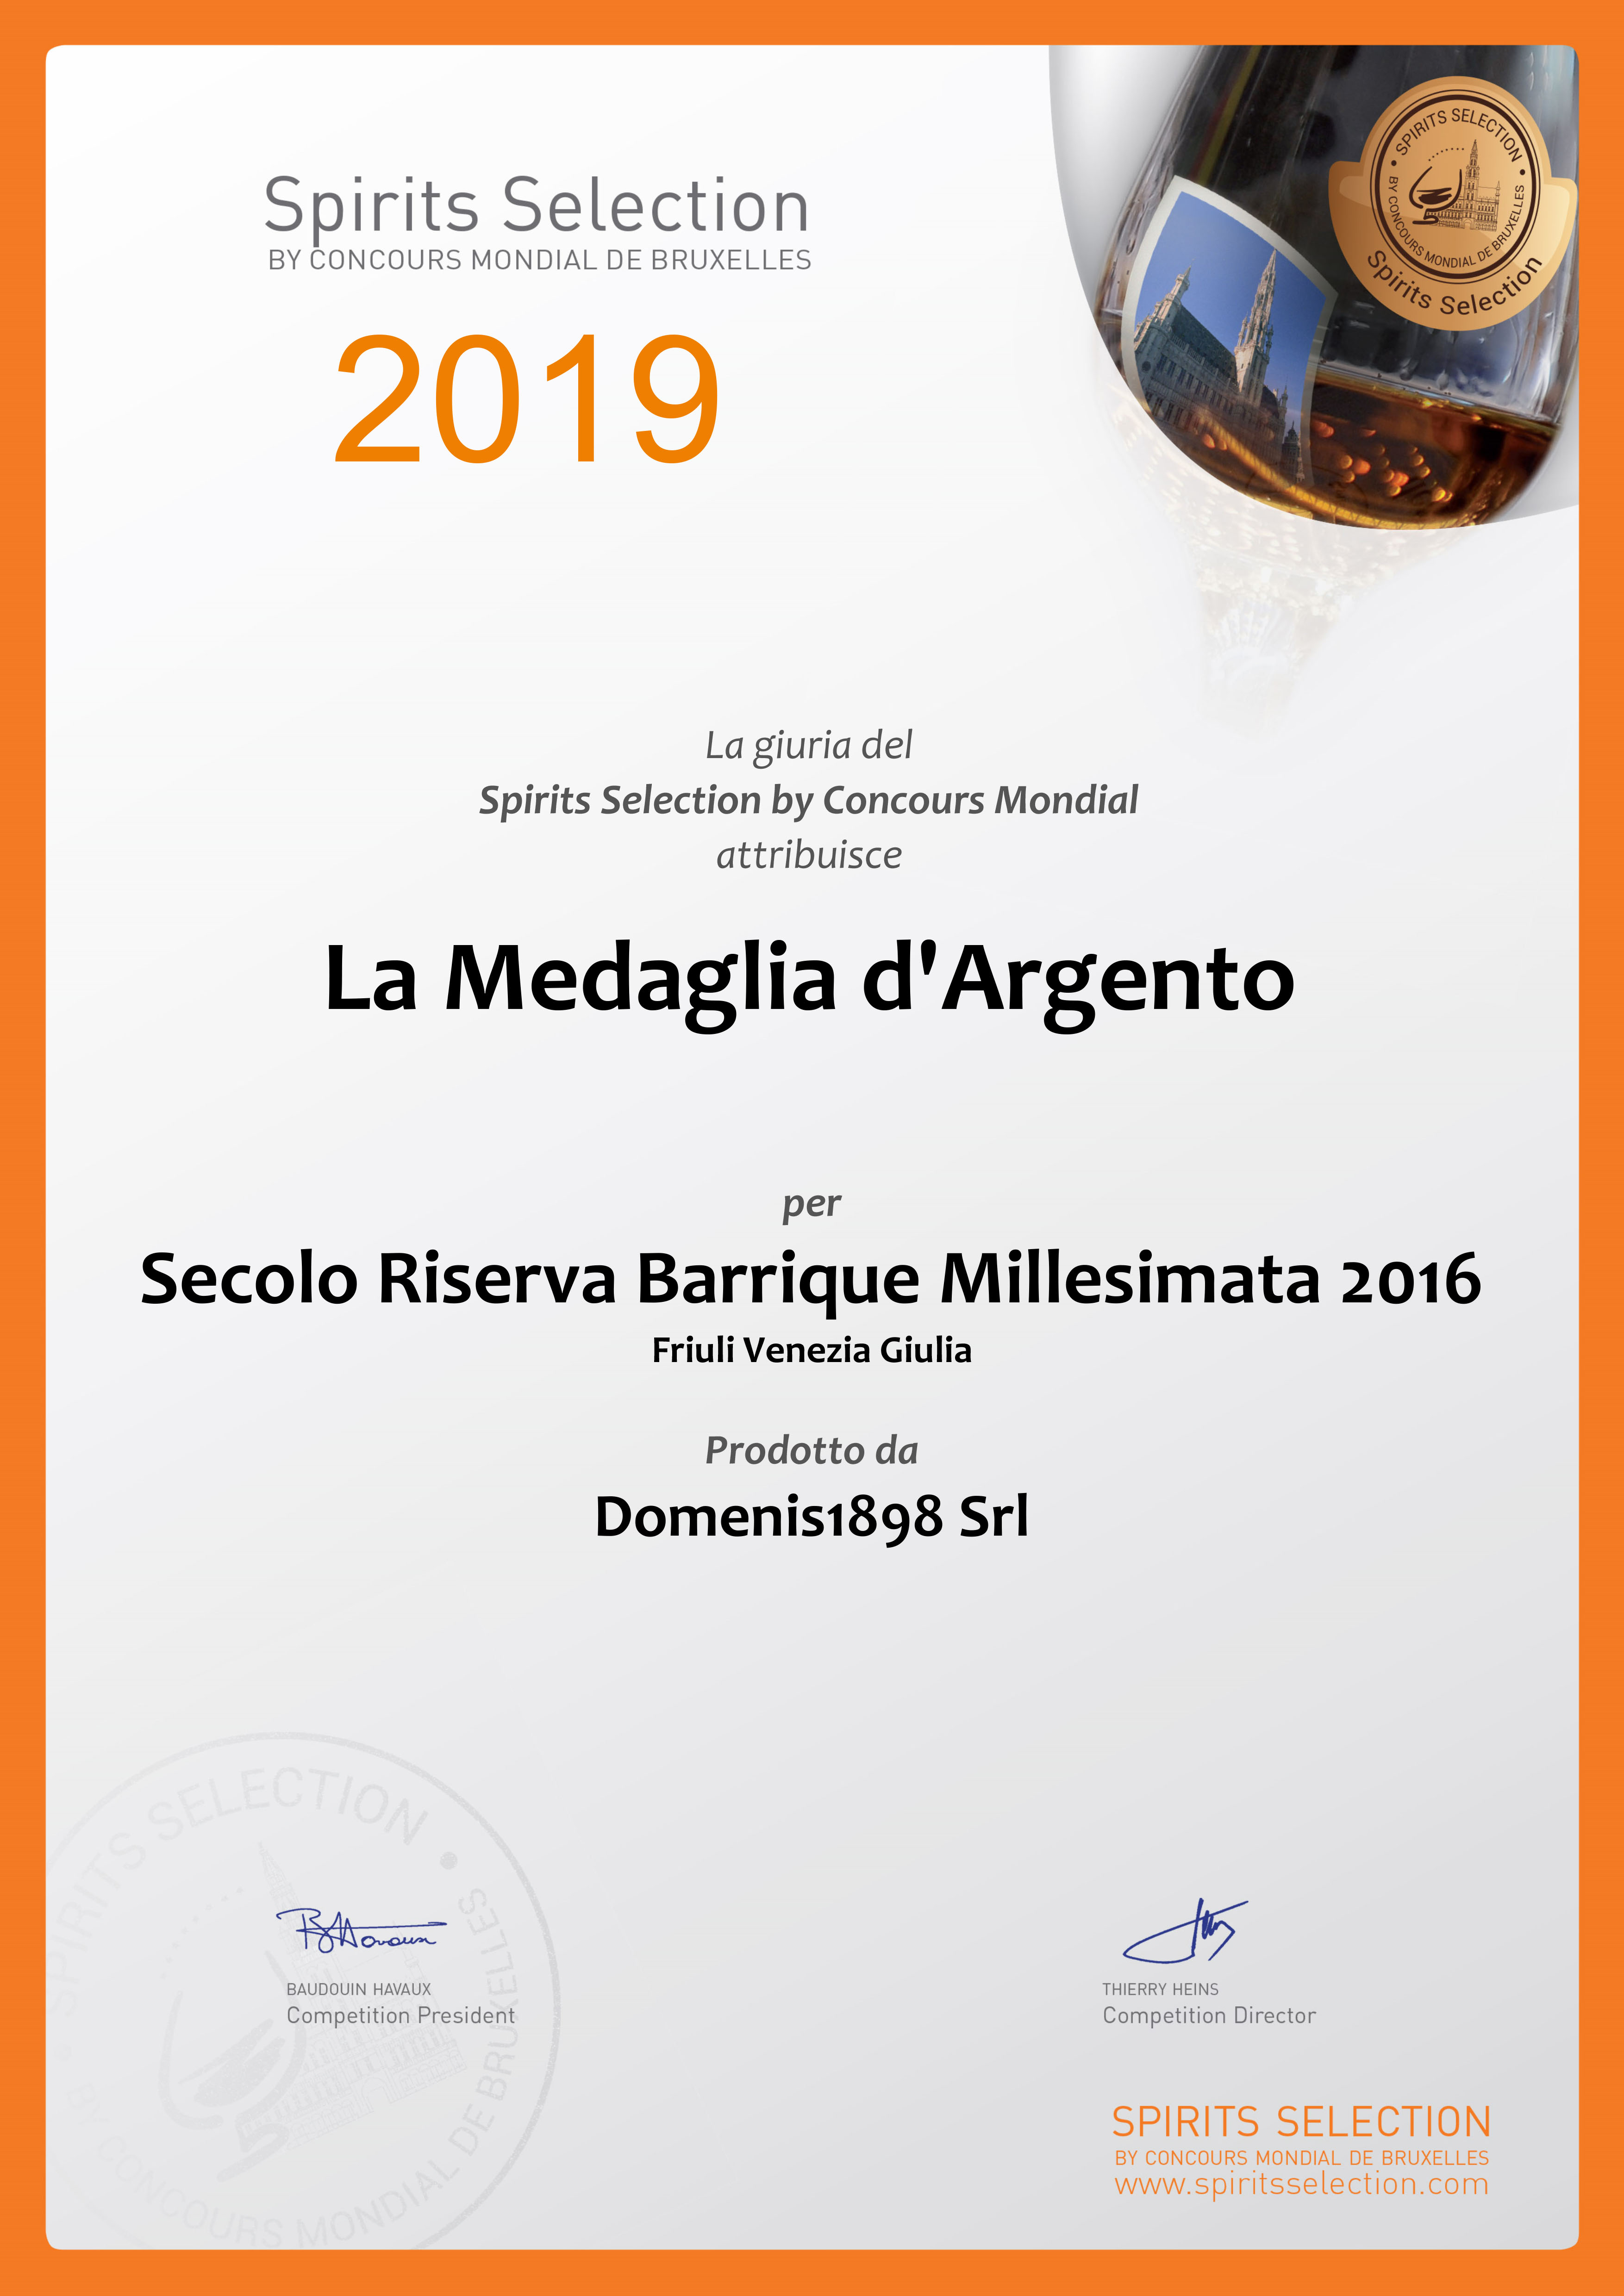 SPIRITS SELECTION by Concours Mondial de Bruxelles_2019 – SILVER MEDAL – SECOLO BARRIQUE MILLESIMATA